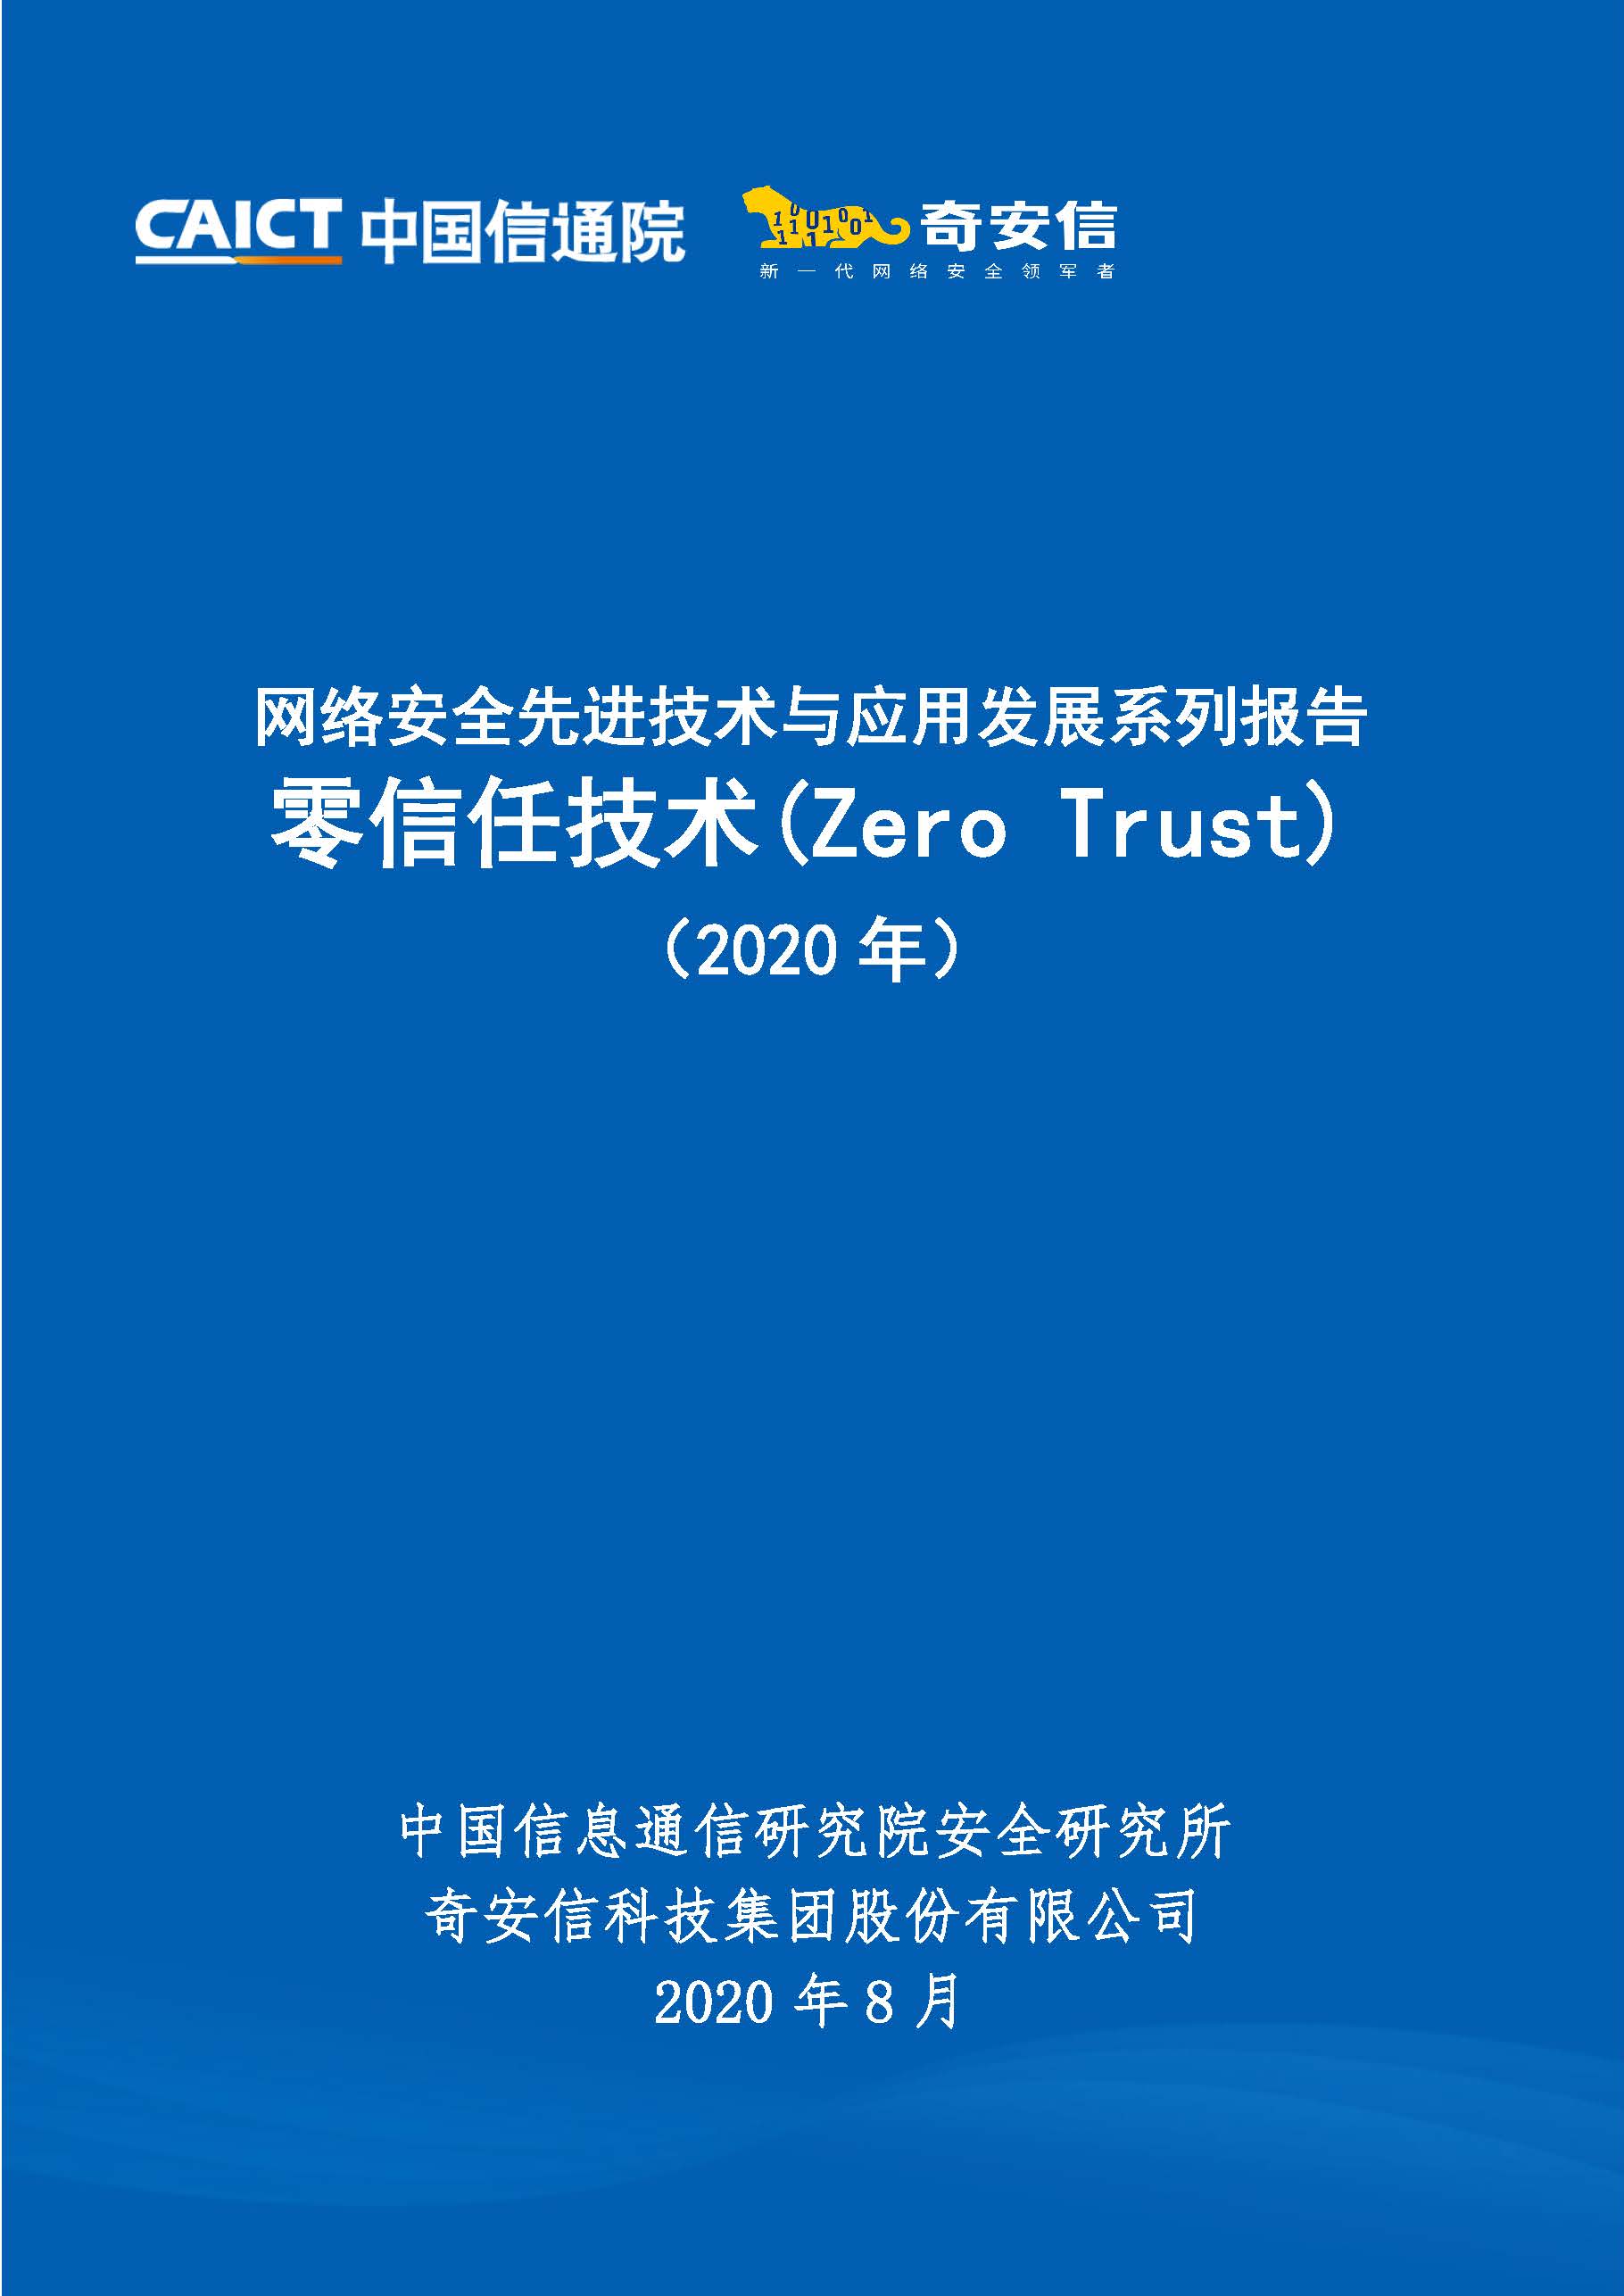 零信任技术(Zero Trust)首页.jpg